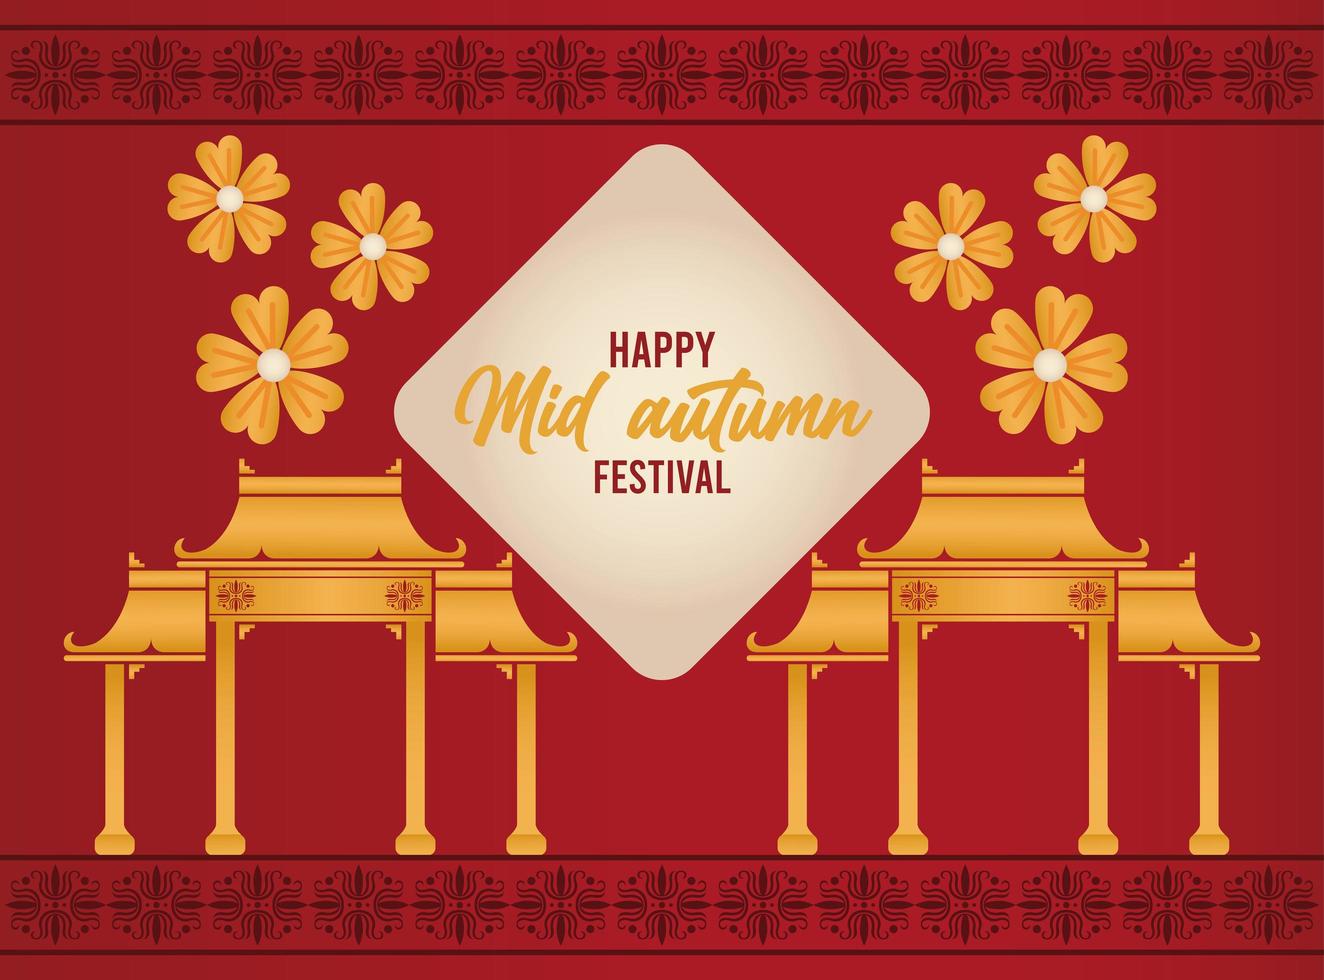 felice carta di lettere di metà autunno con archi cinesi e fiori vettore